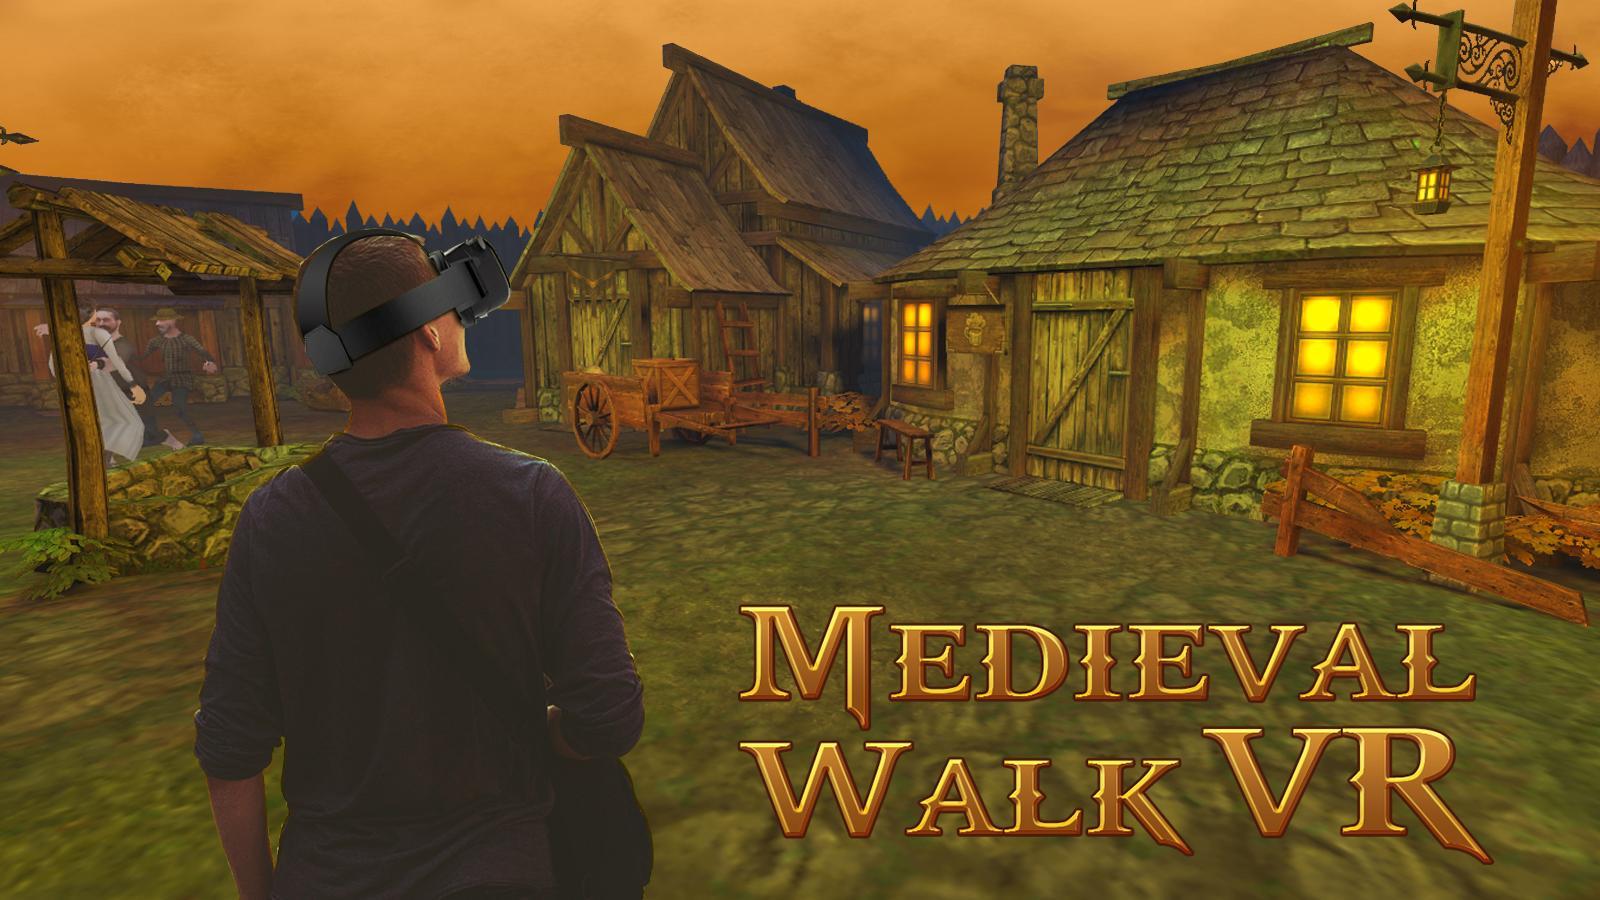 Medieval Village Walk VR Game for Android - APK Download